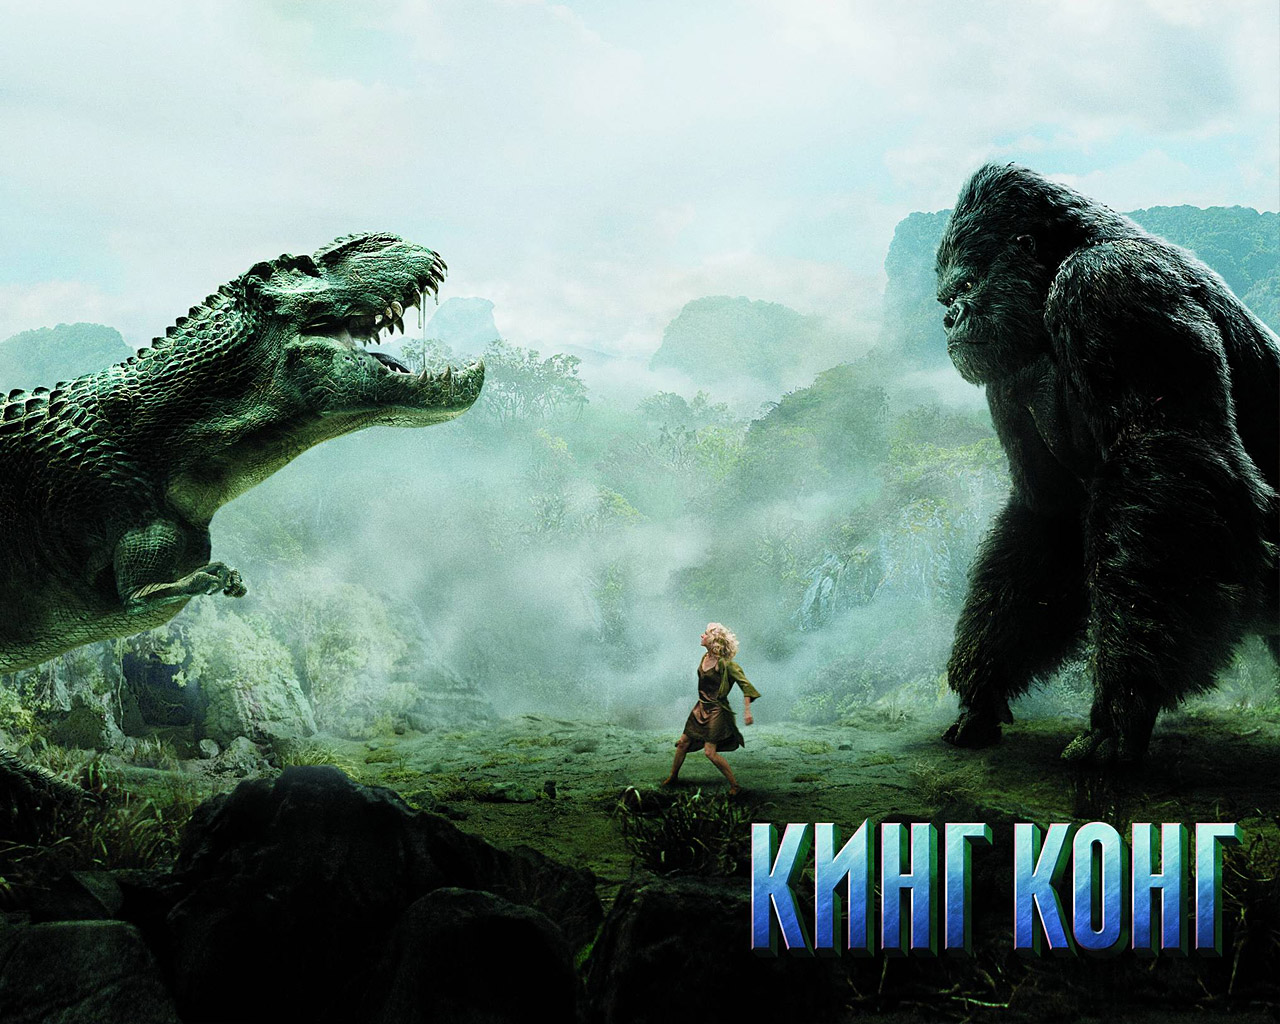 3d обои Кинг-Конг, Наоми Уоттс и Динозавр в джунглях из фильма «Кинг-Конг»  обезьяны # 67920